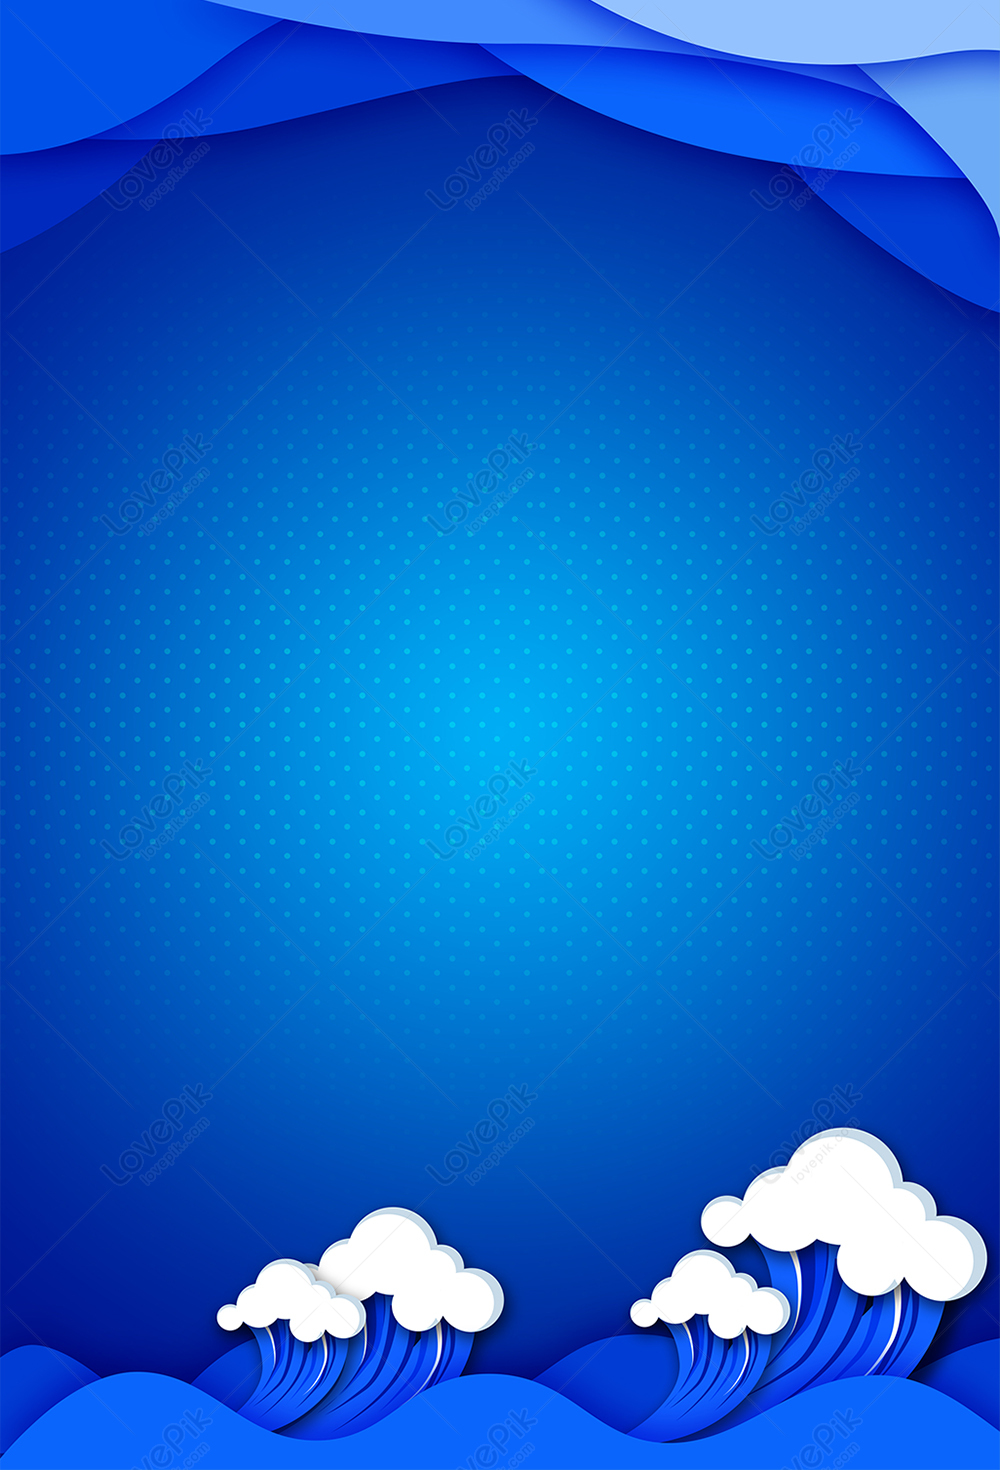 Elegant Blue Poster Background Download Free | Poster Background Image on  Lovepik | 401488278